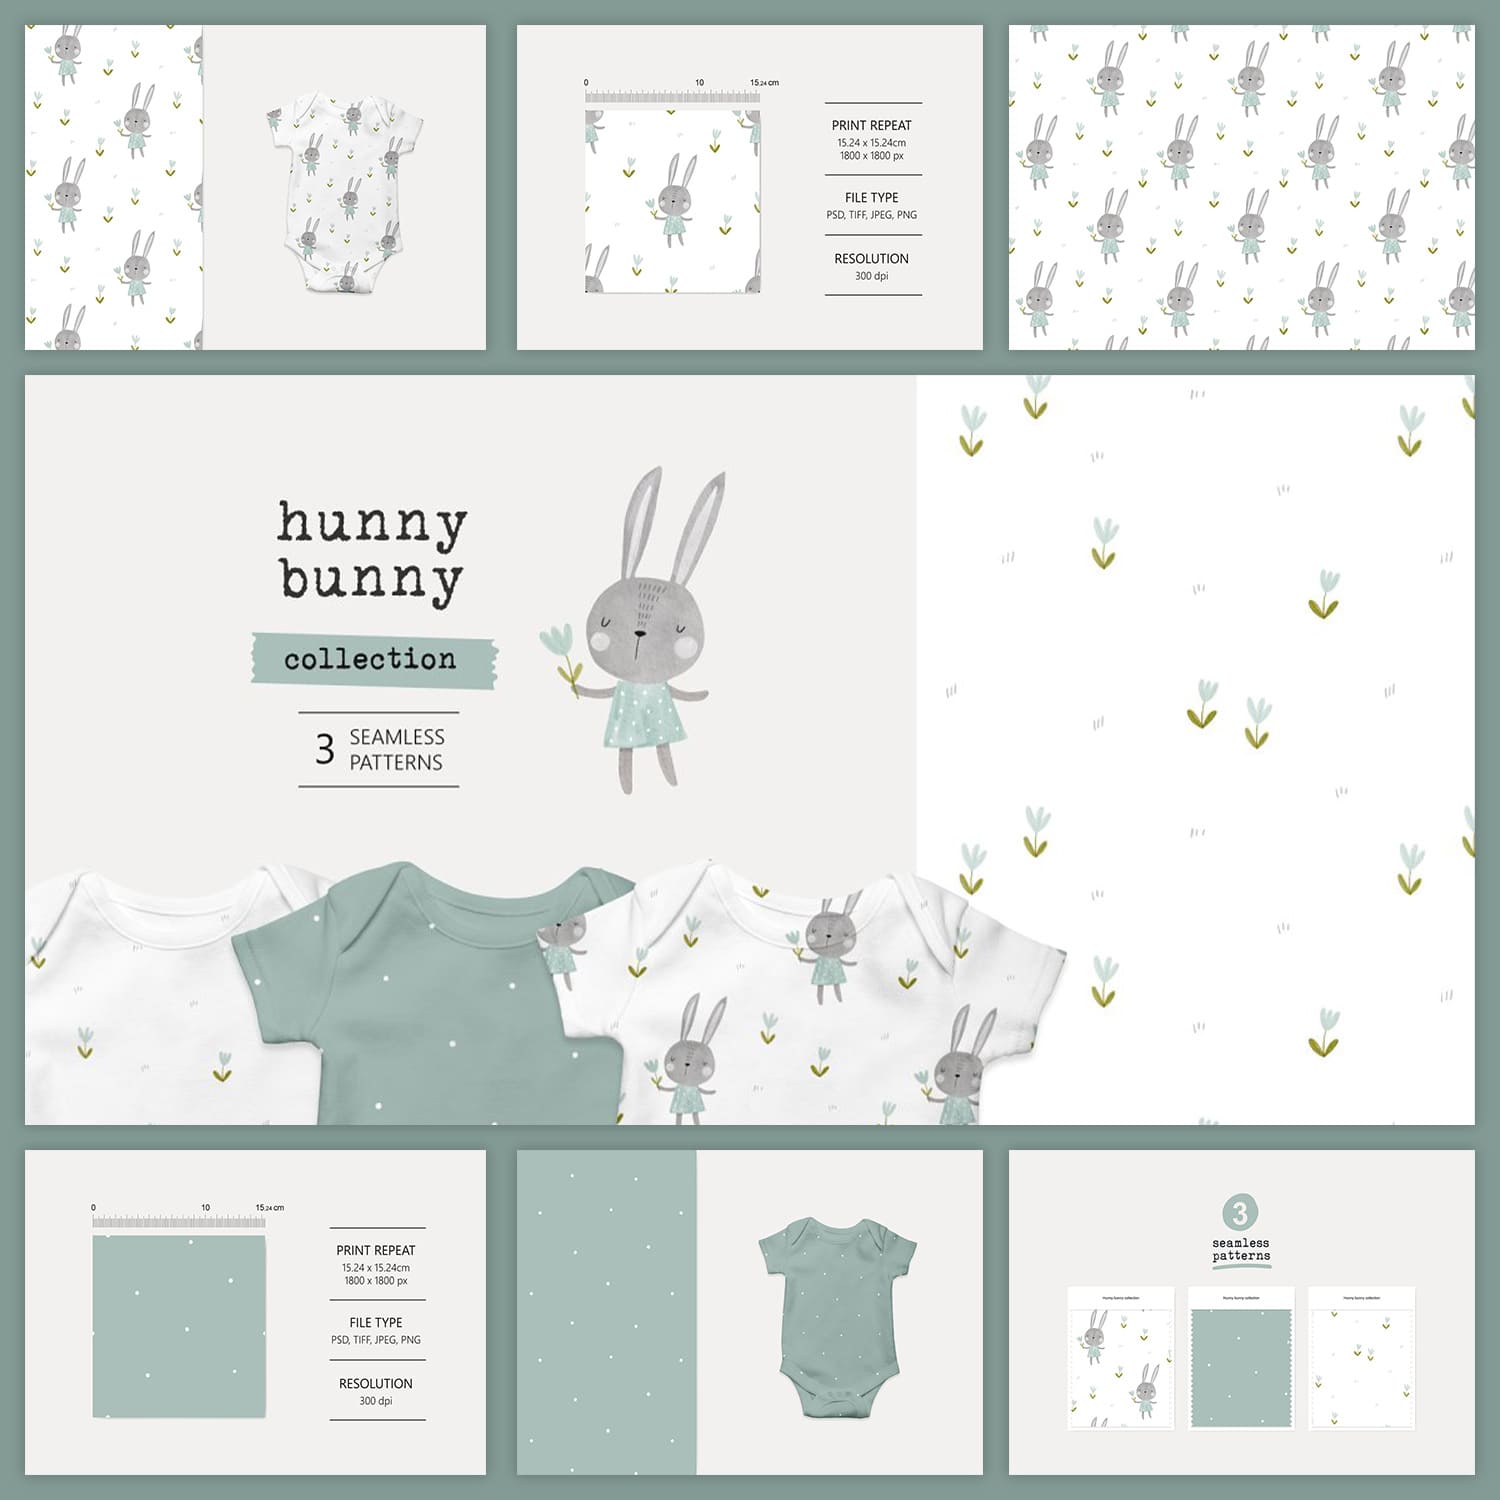 Hunny Bunny.